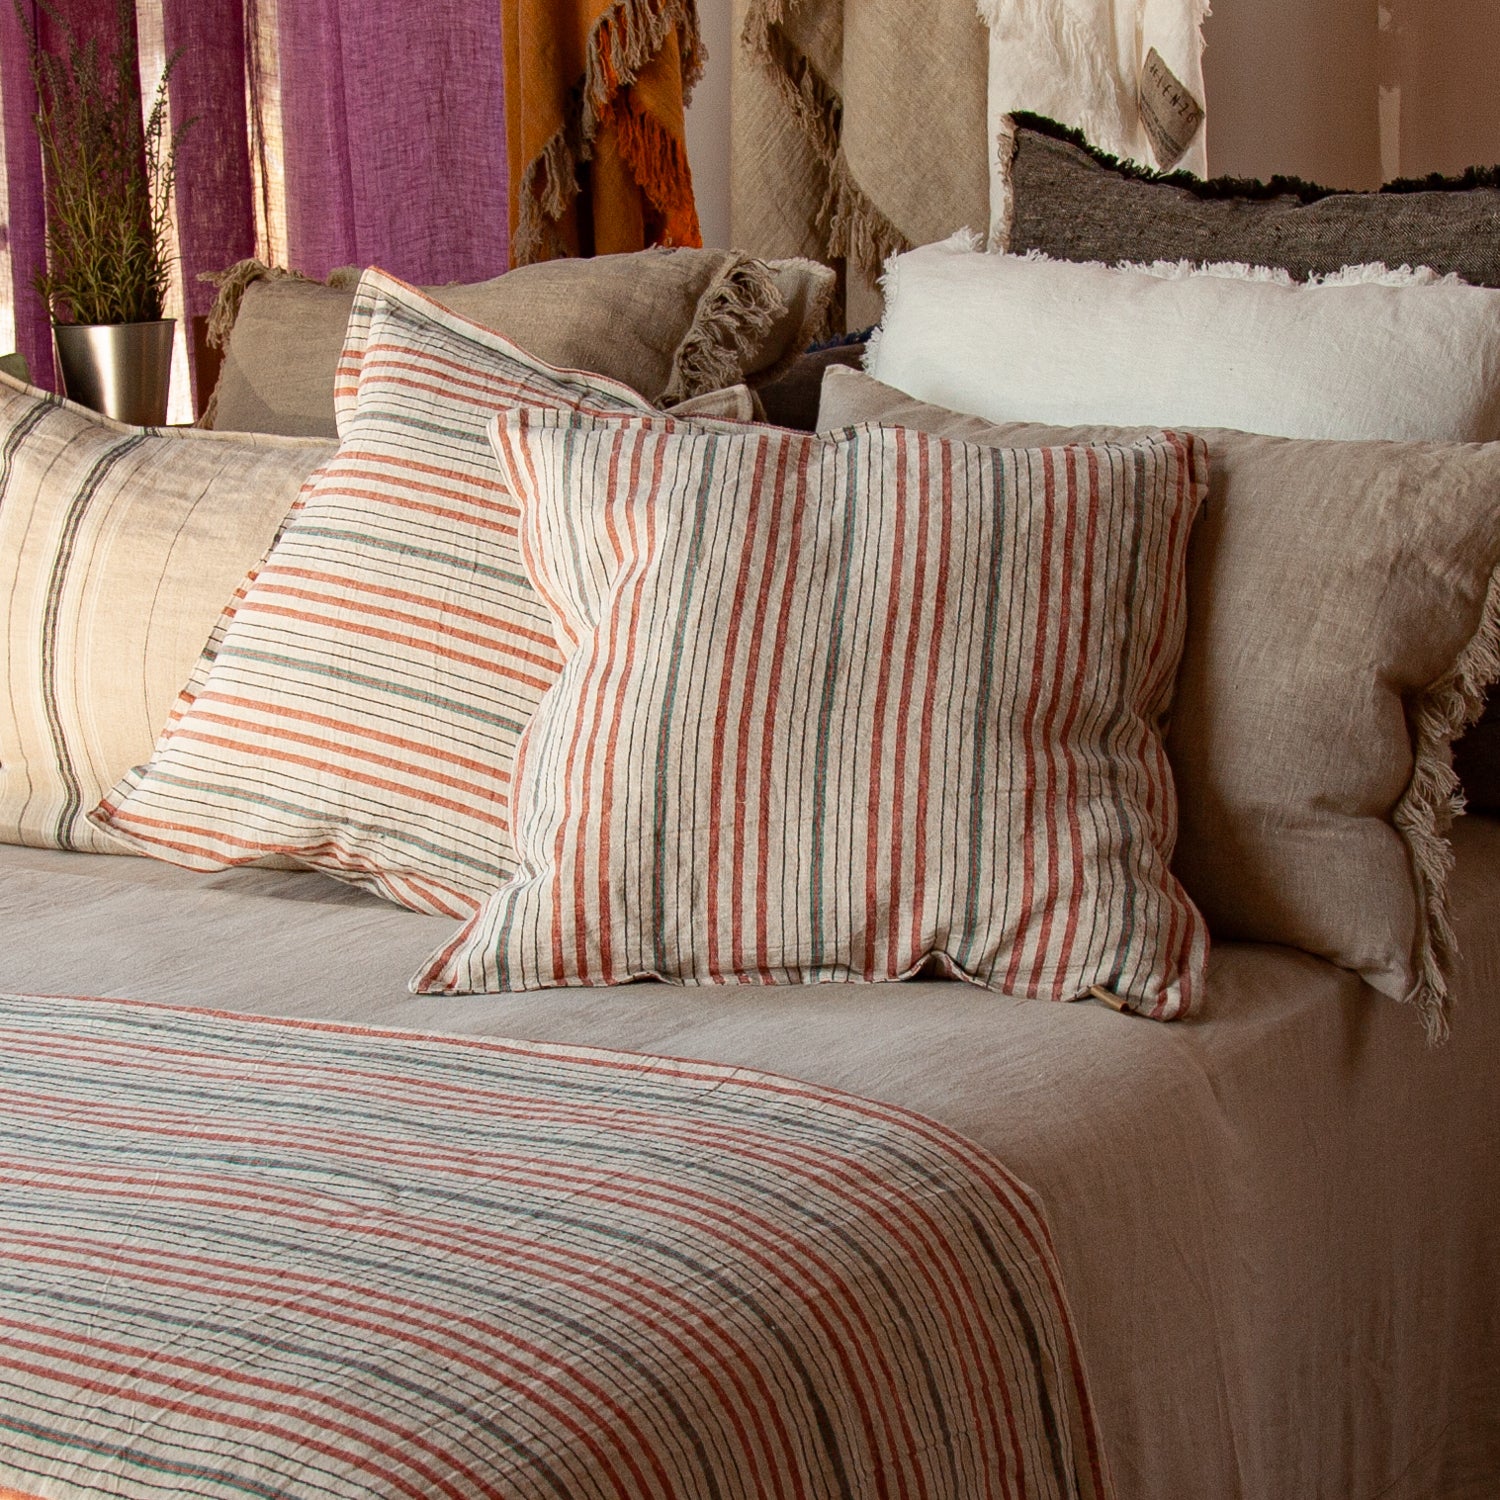 Detalle de Juego de cojines en tonos naturales con pie de cama de lino rayado y sábana de lino natural.